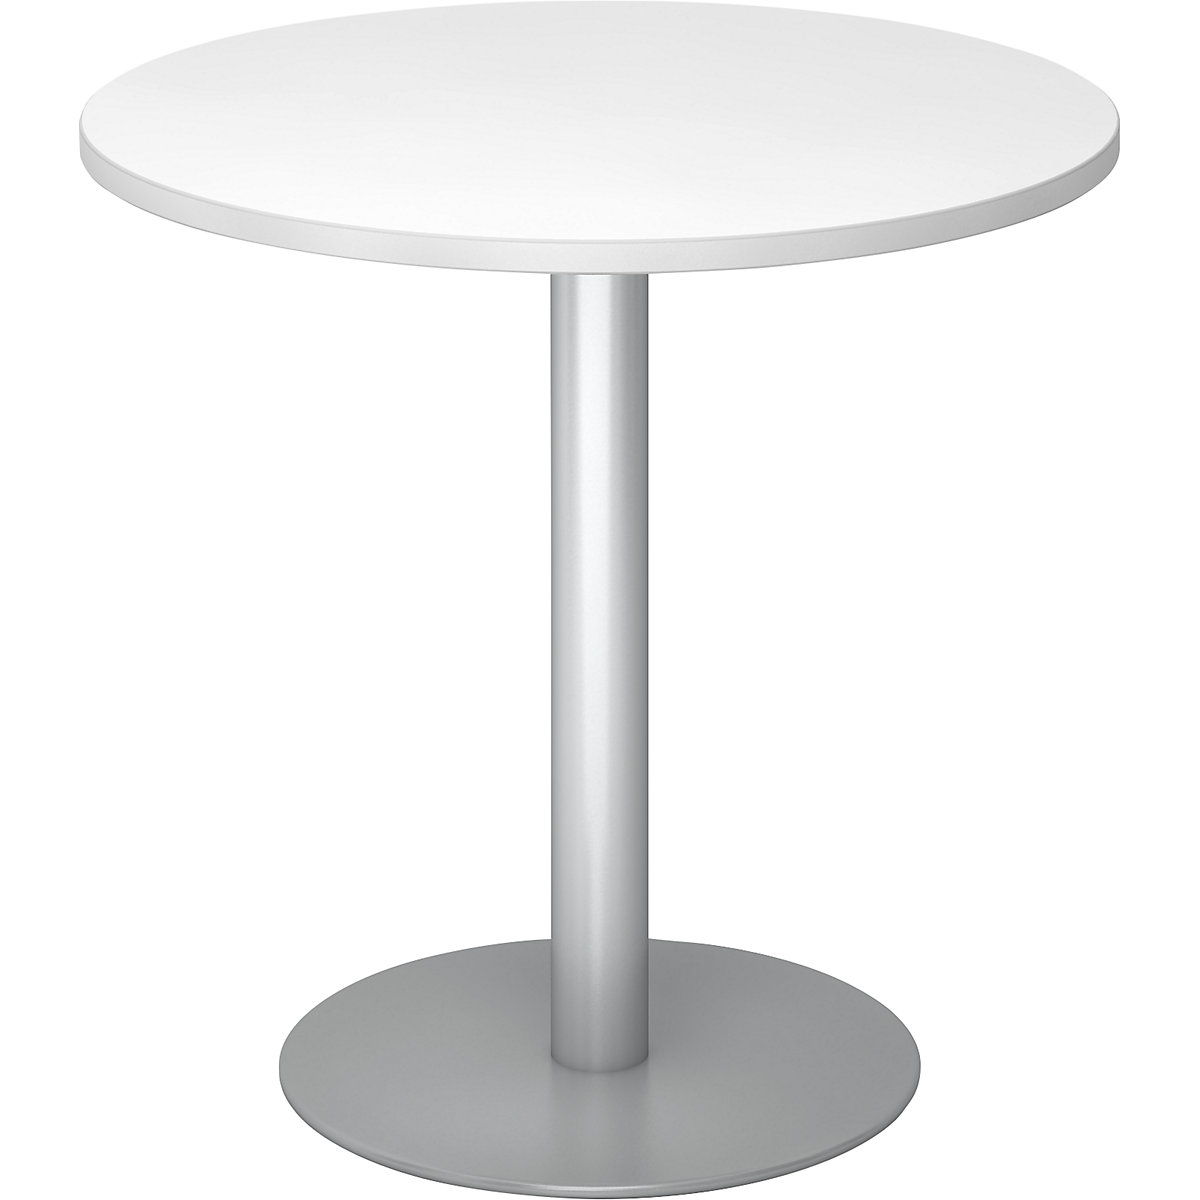 Tárgyalóasztal, Ø 800 mm, 755 mm magas, ezüst váz, fehér asztallap